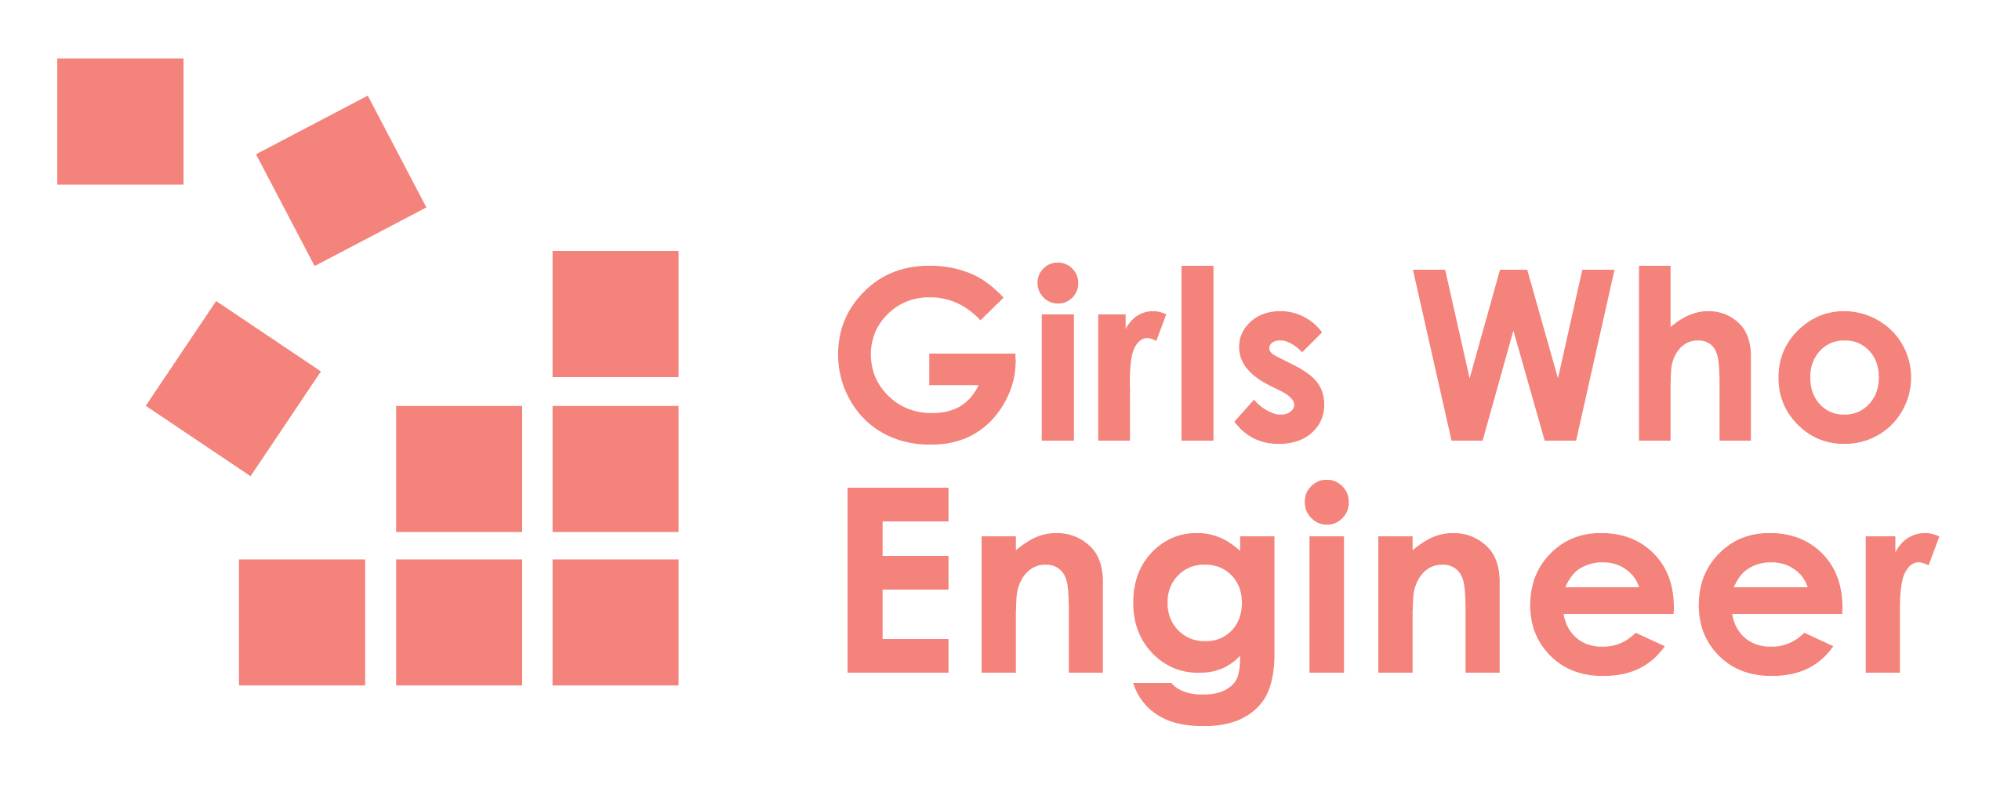 Girls who engineer logos